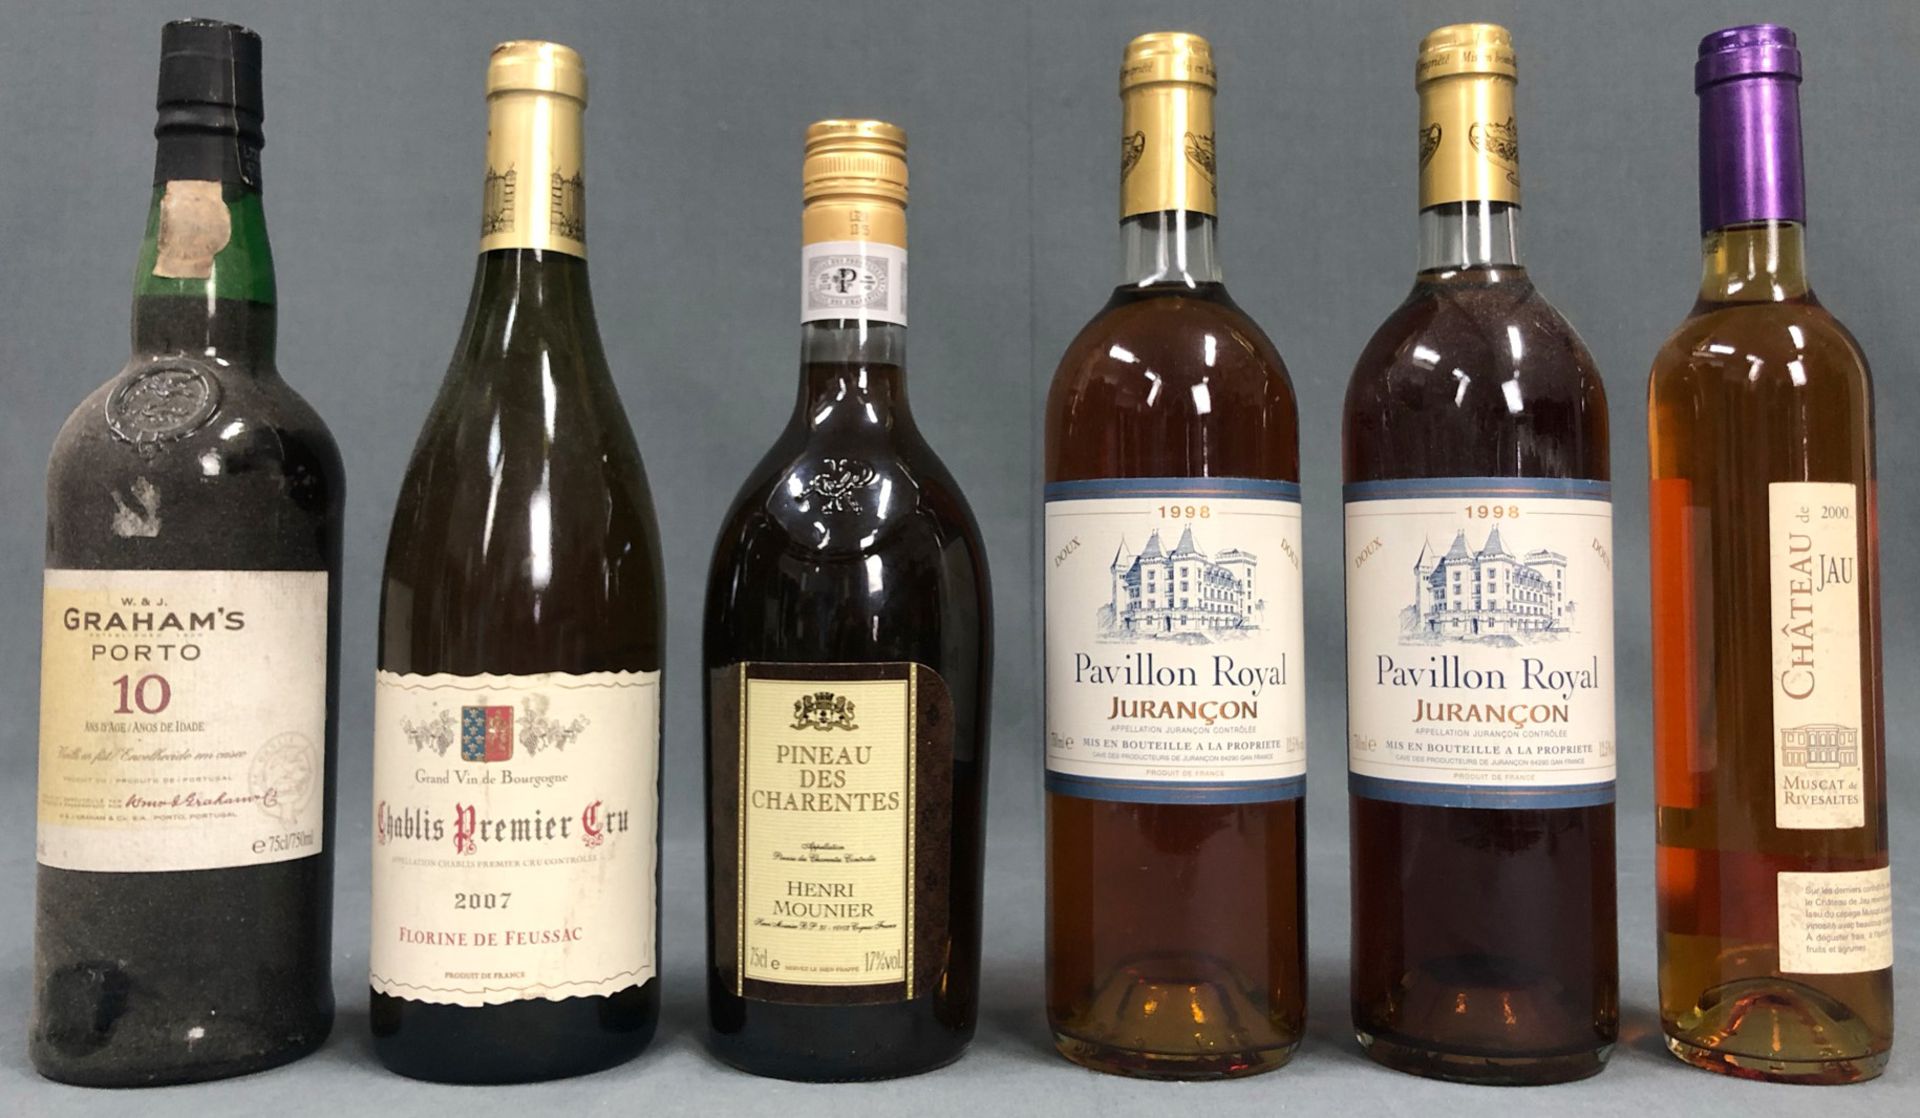 5 bottles of France white wine and a bottle Graham Port.